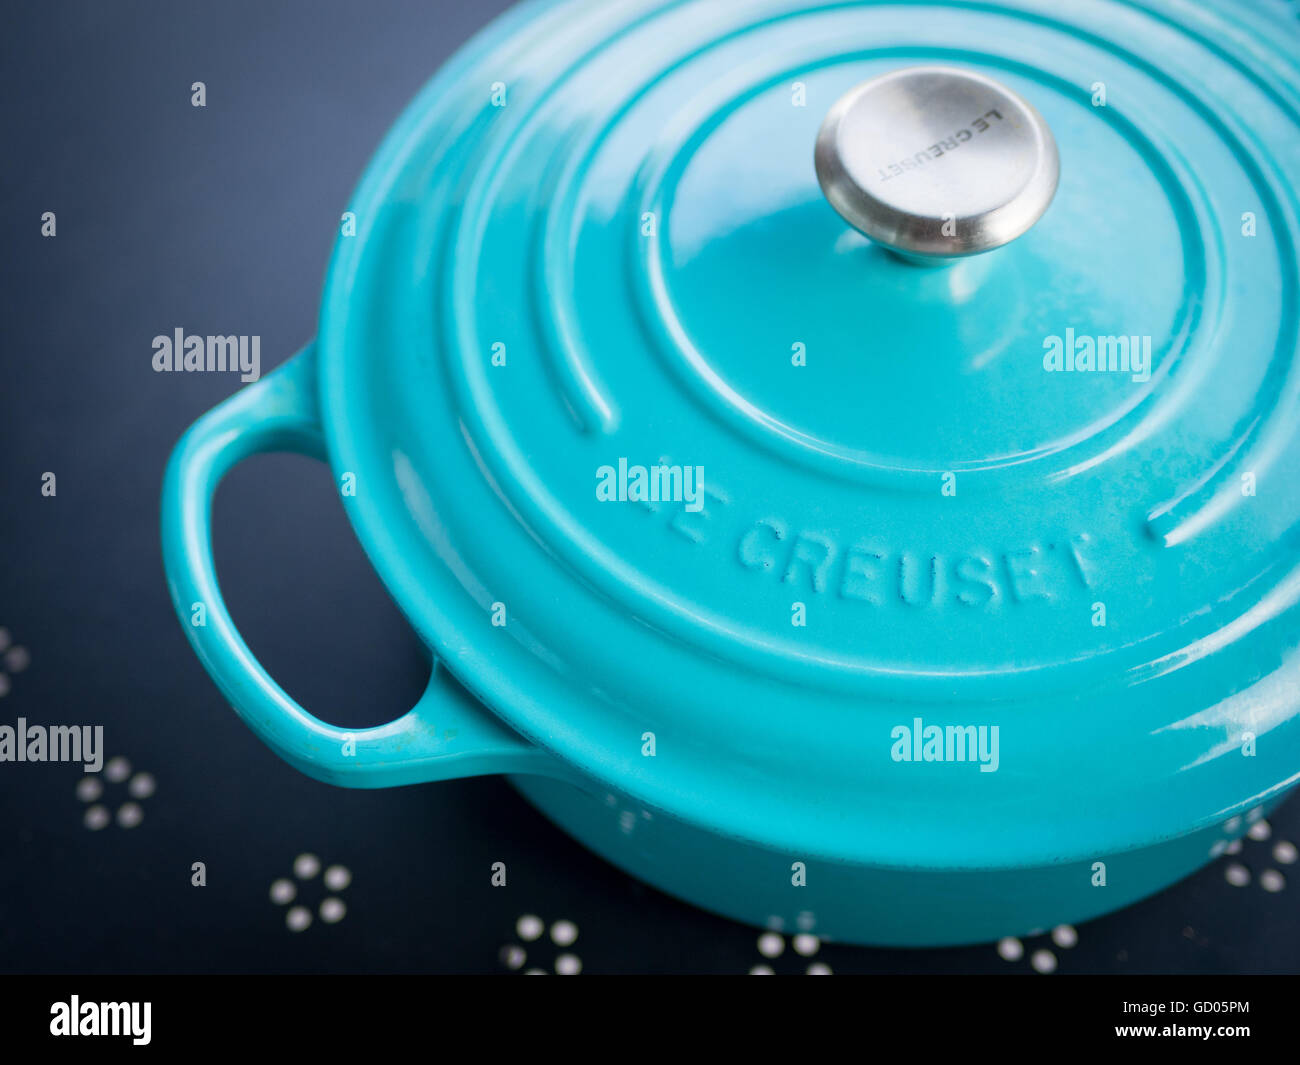 Eine Signatur Le Creuset emaillierte gusseiserne französischen Ofen 'Karibik' (türkis) Farbe. Stockfoto